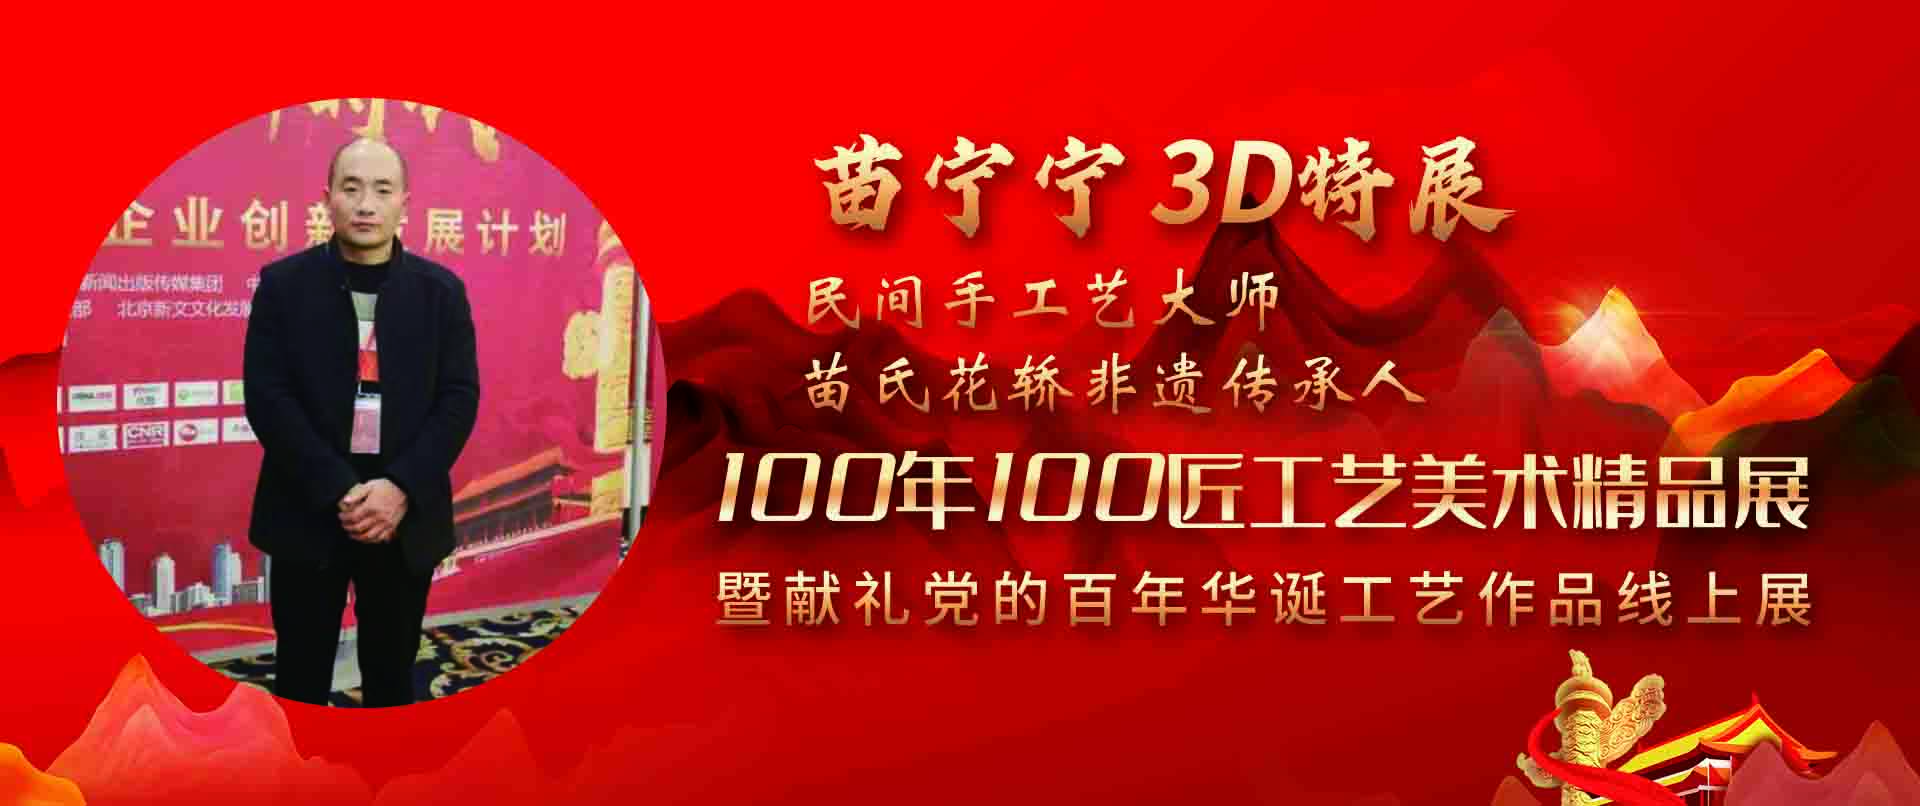 苗宁宁3D特展-100年100匠工艺美术精品展